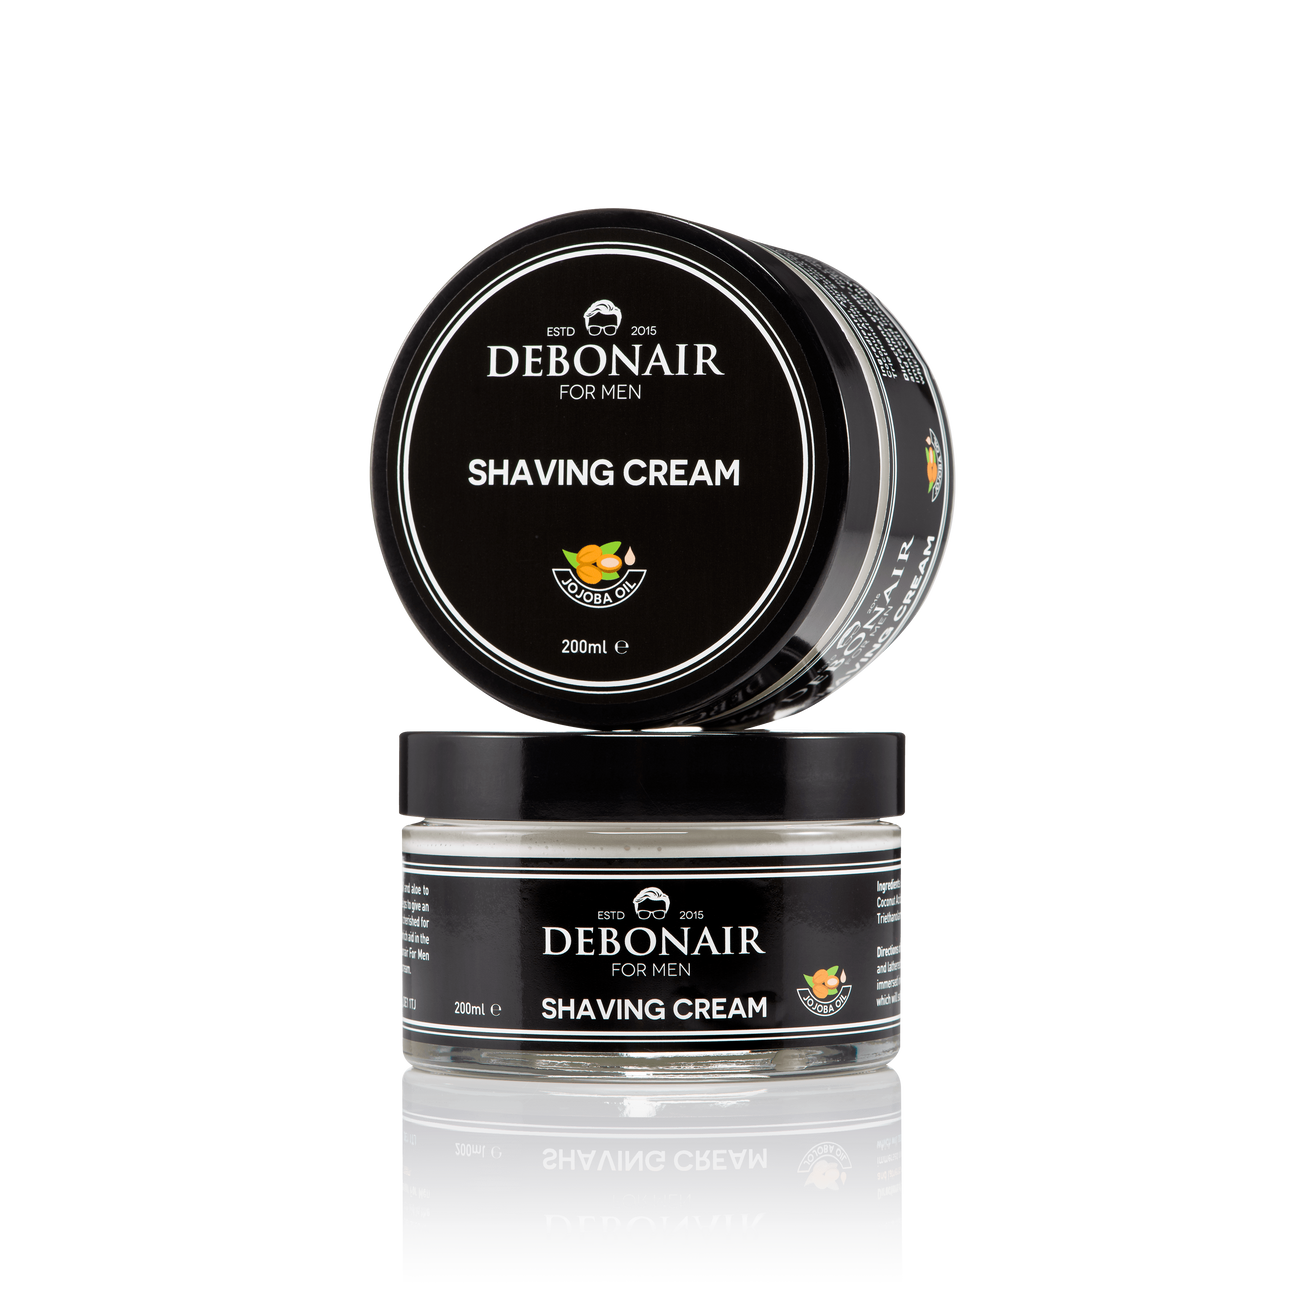 Shaving Cream - Debonair for Men